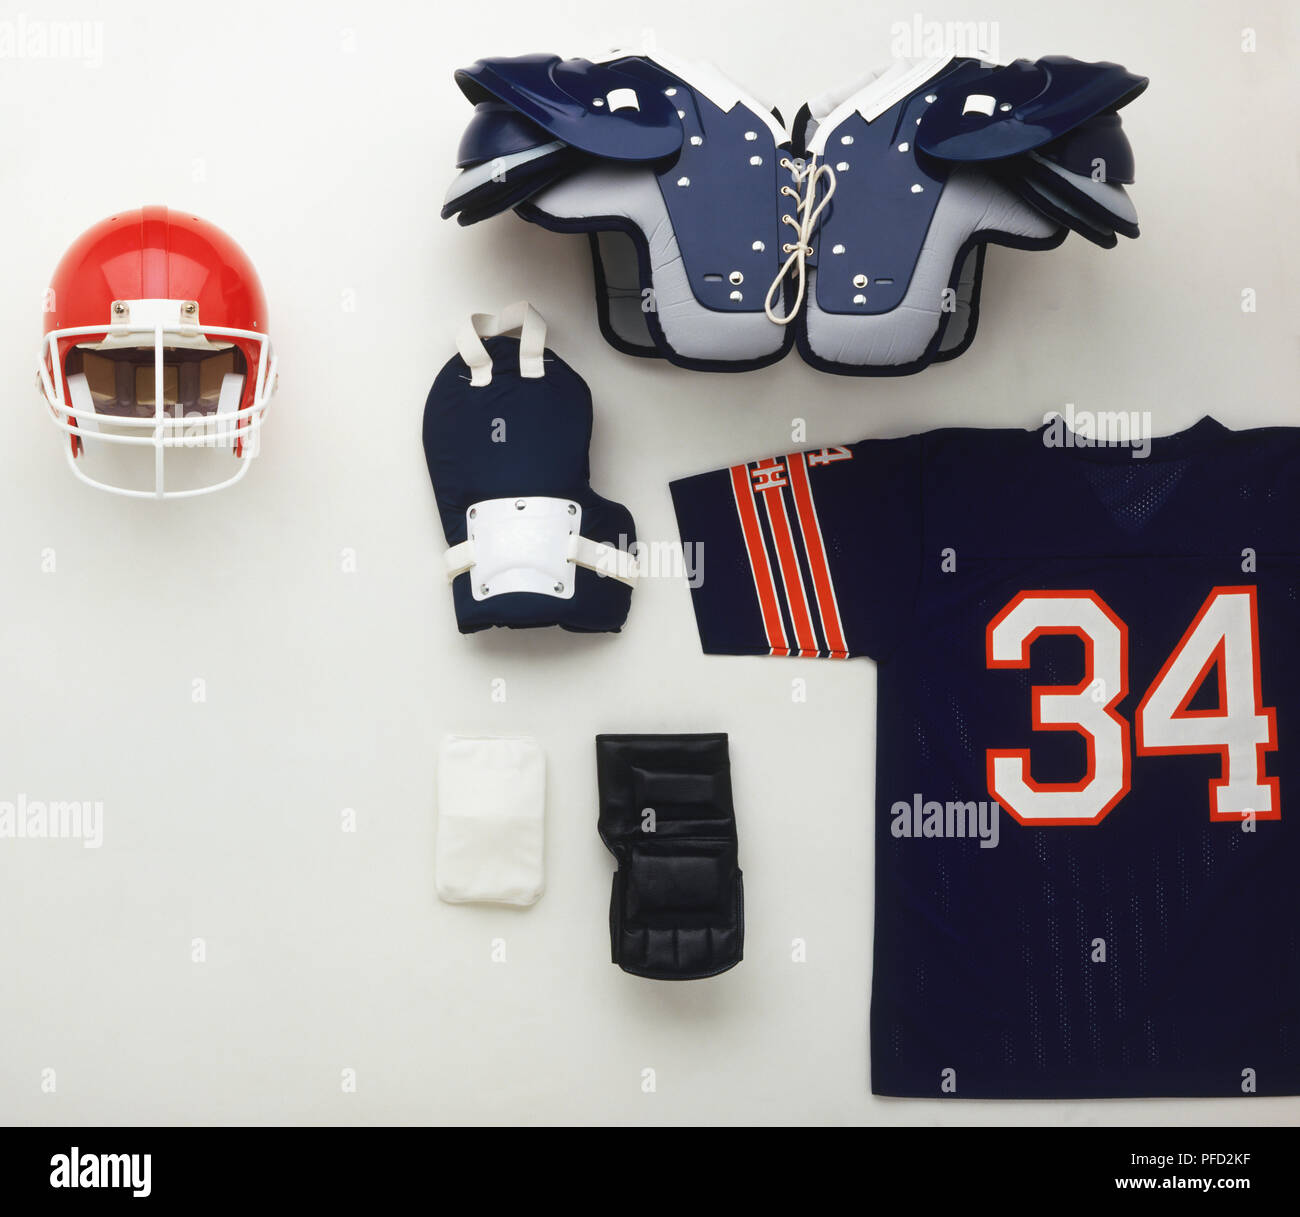 Uniforme de football américain, y compris d'épaulières, coudières, casque et shirt Banque D'Images